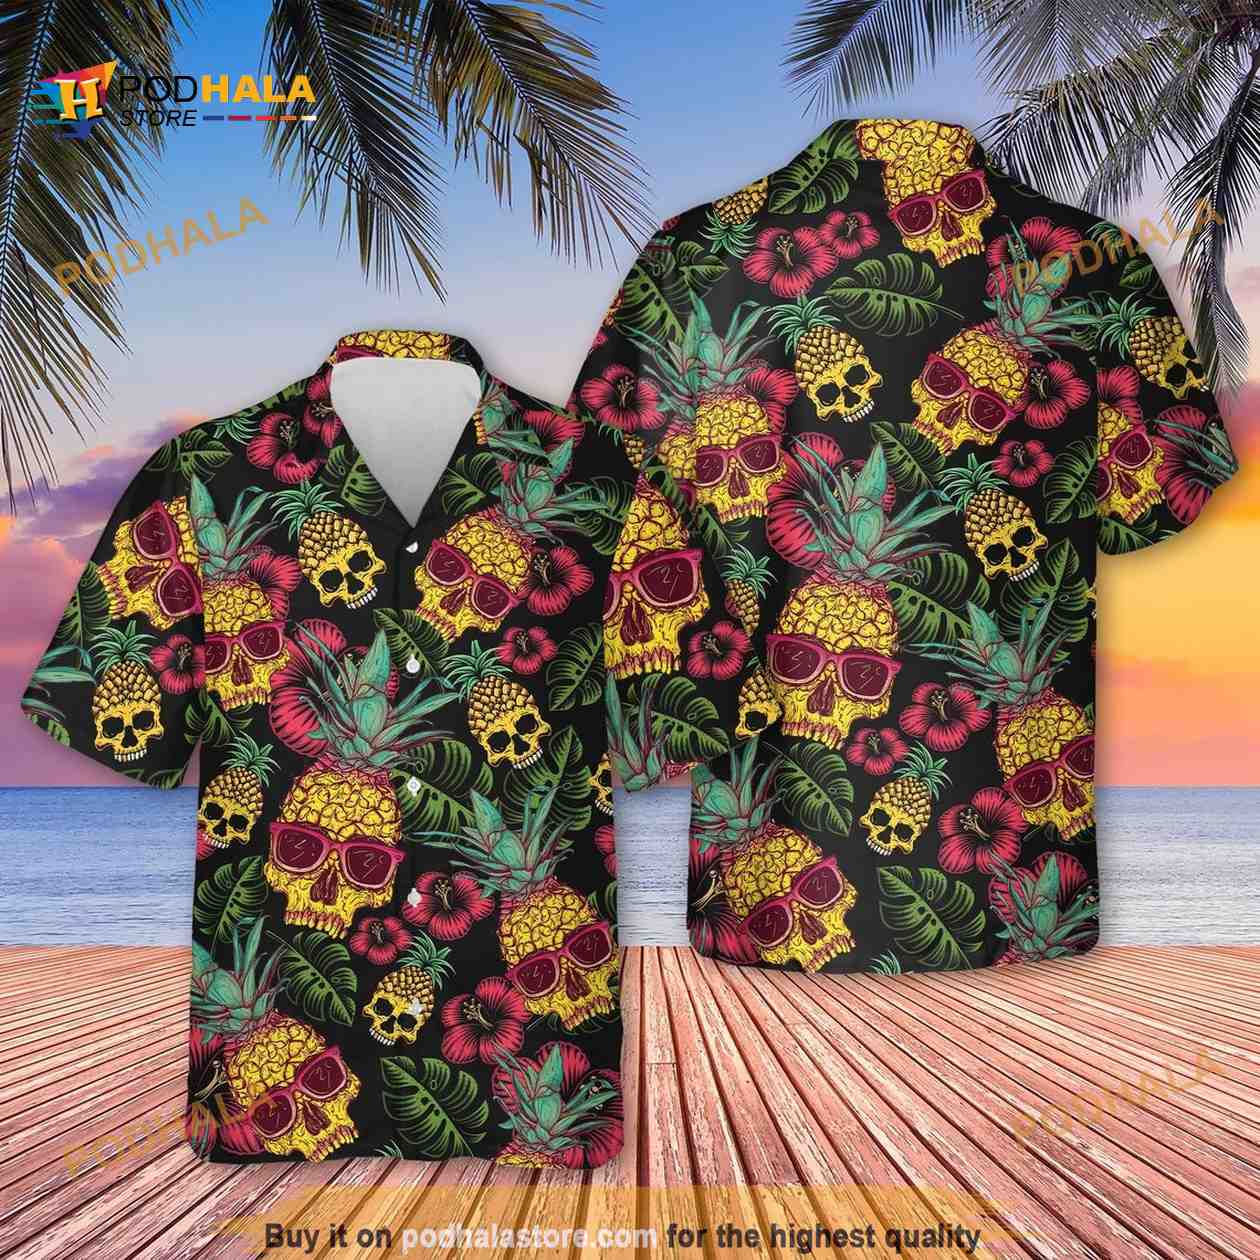 Pineapple Hawaiian shirt